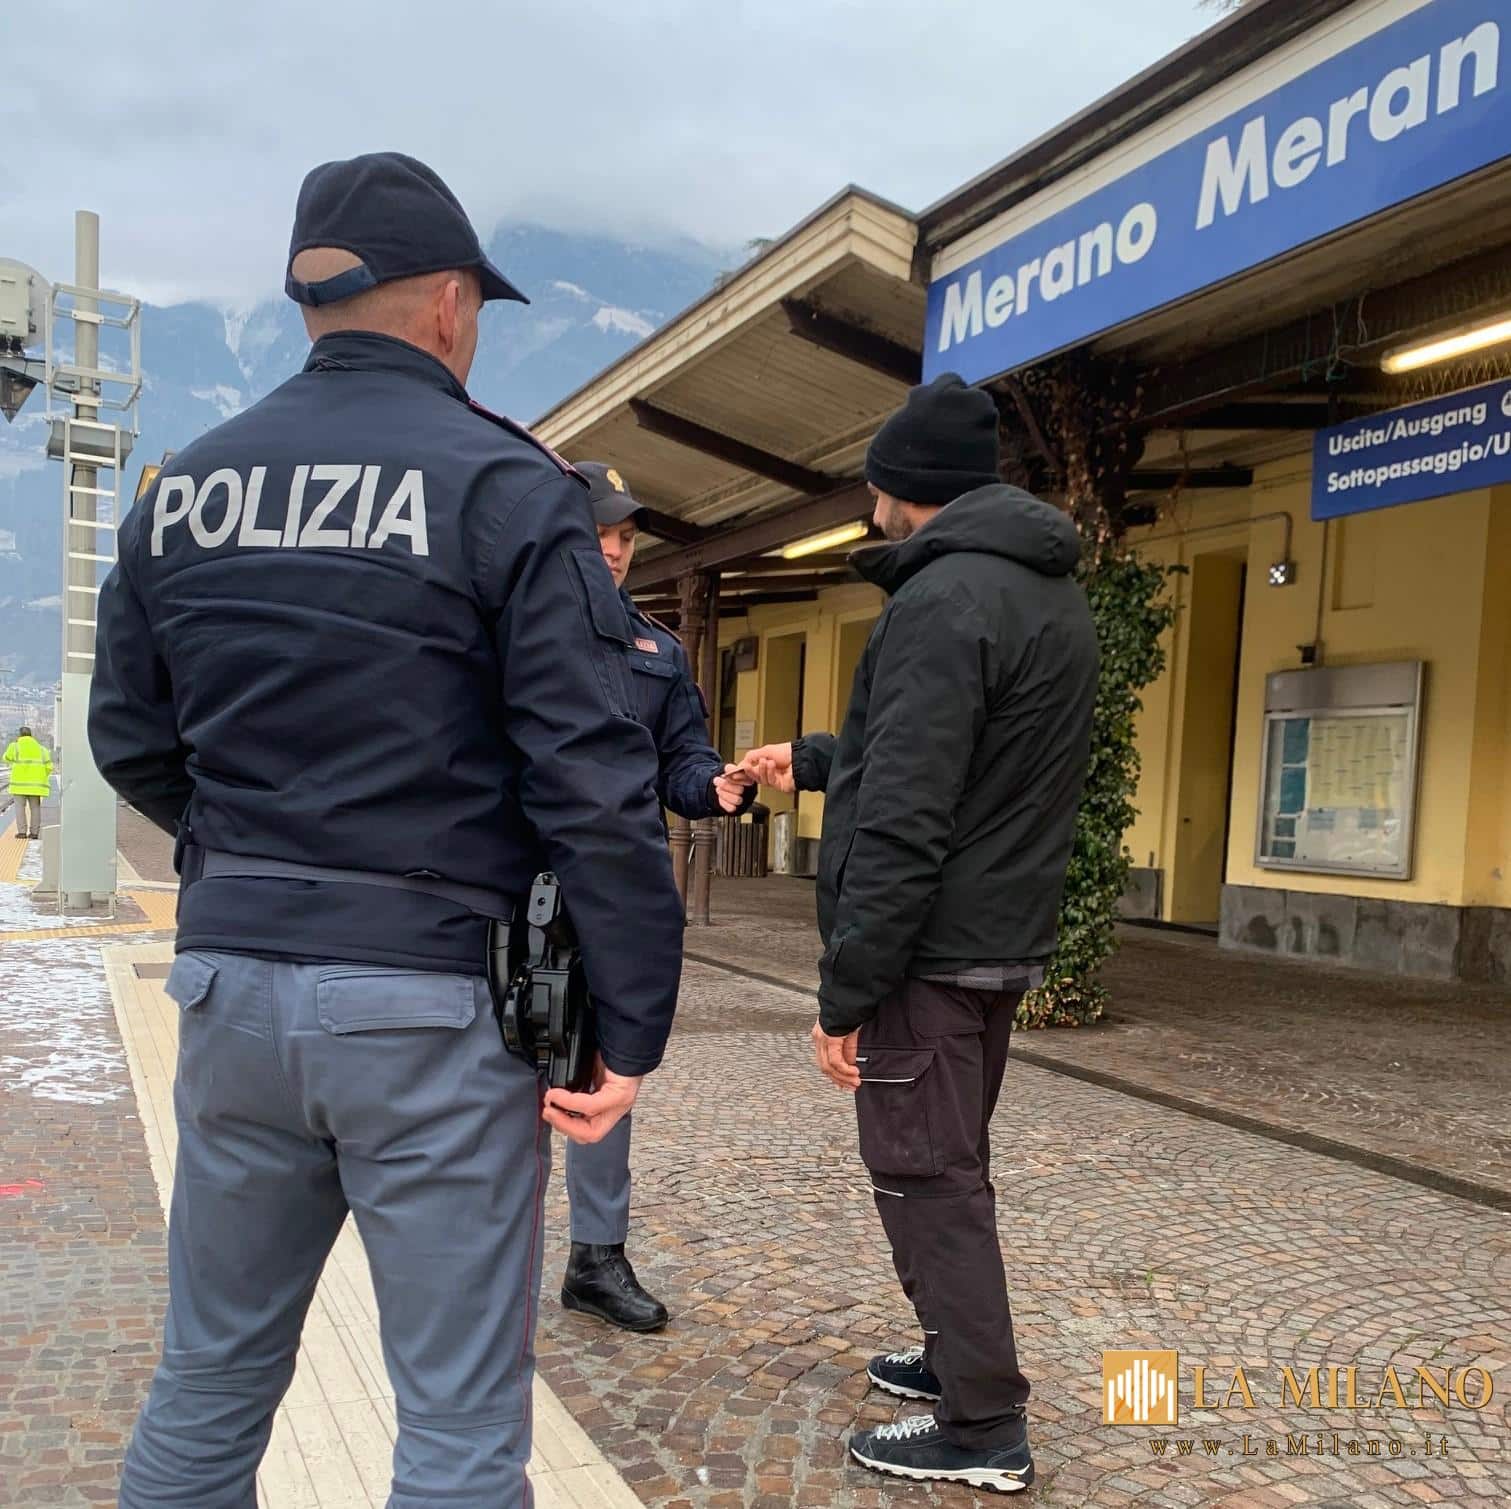 Viola l’obbligo di soggiorno a Bolzano e si reca in stazione ferroviaria a Merano, arrestato dalla Polizia di Stato.